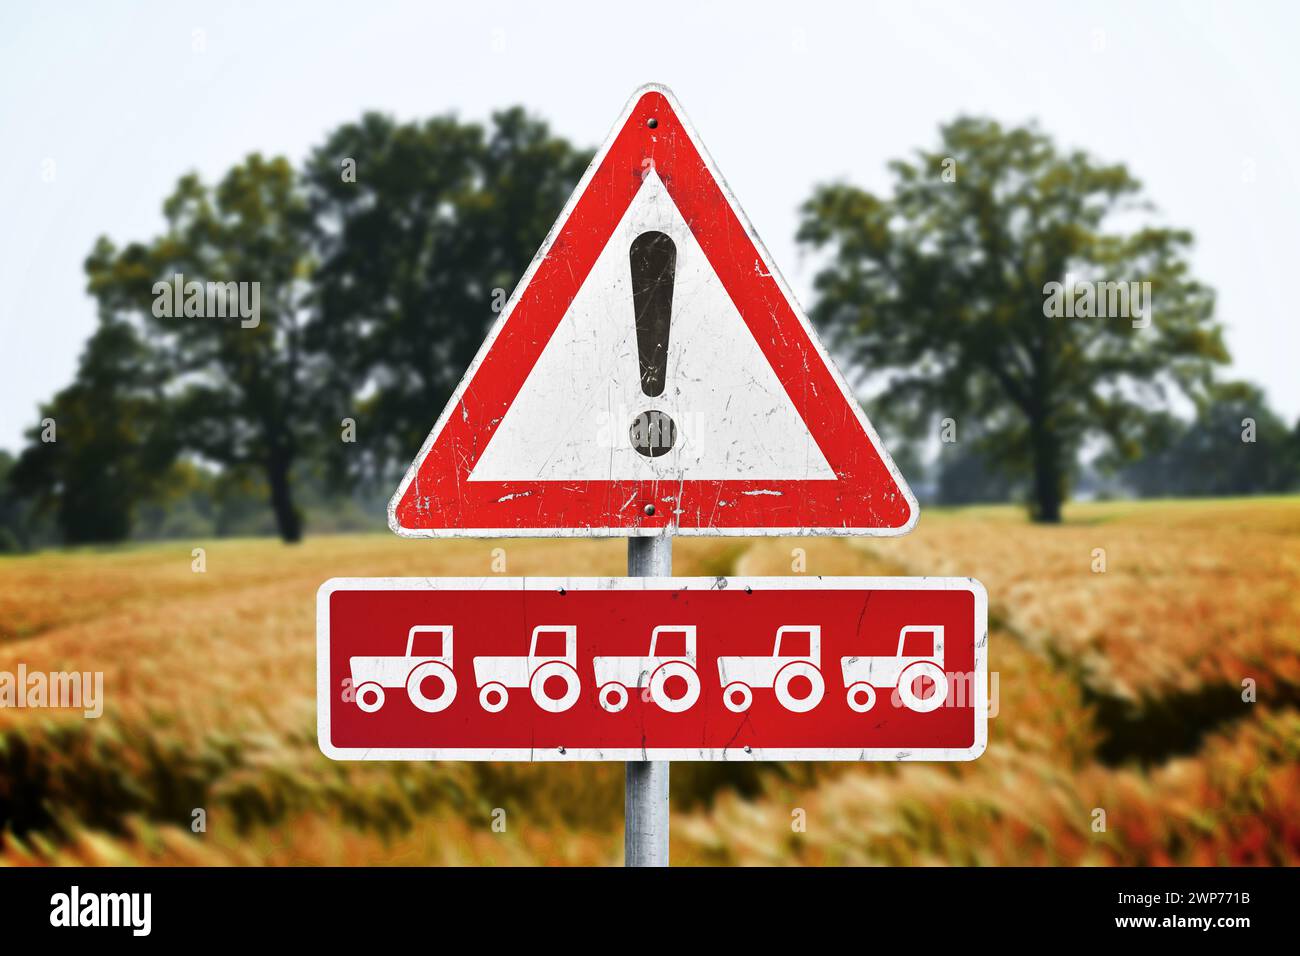 FOTOMONTAGE, Verkehrszeichen mit Ausrufezeichen und Traktoren in einer Reihe, Symbolfoto Bauernproteste Stock Photo